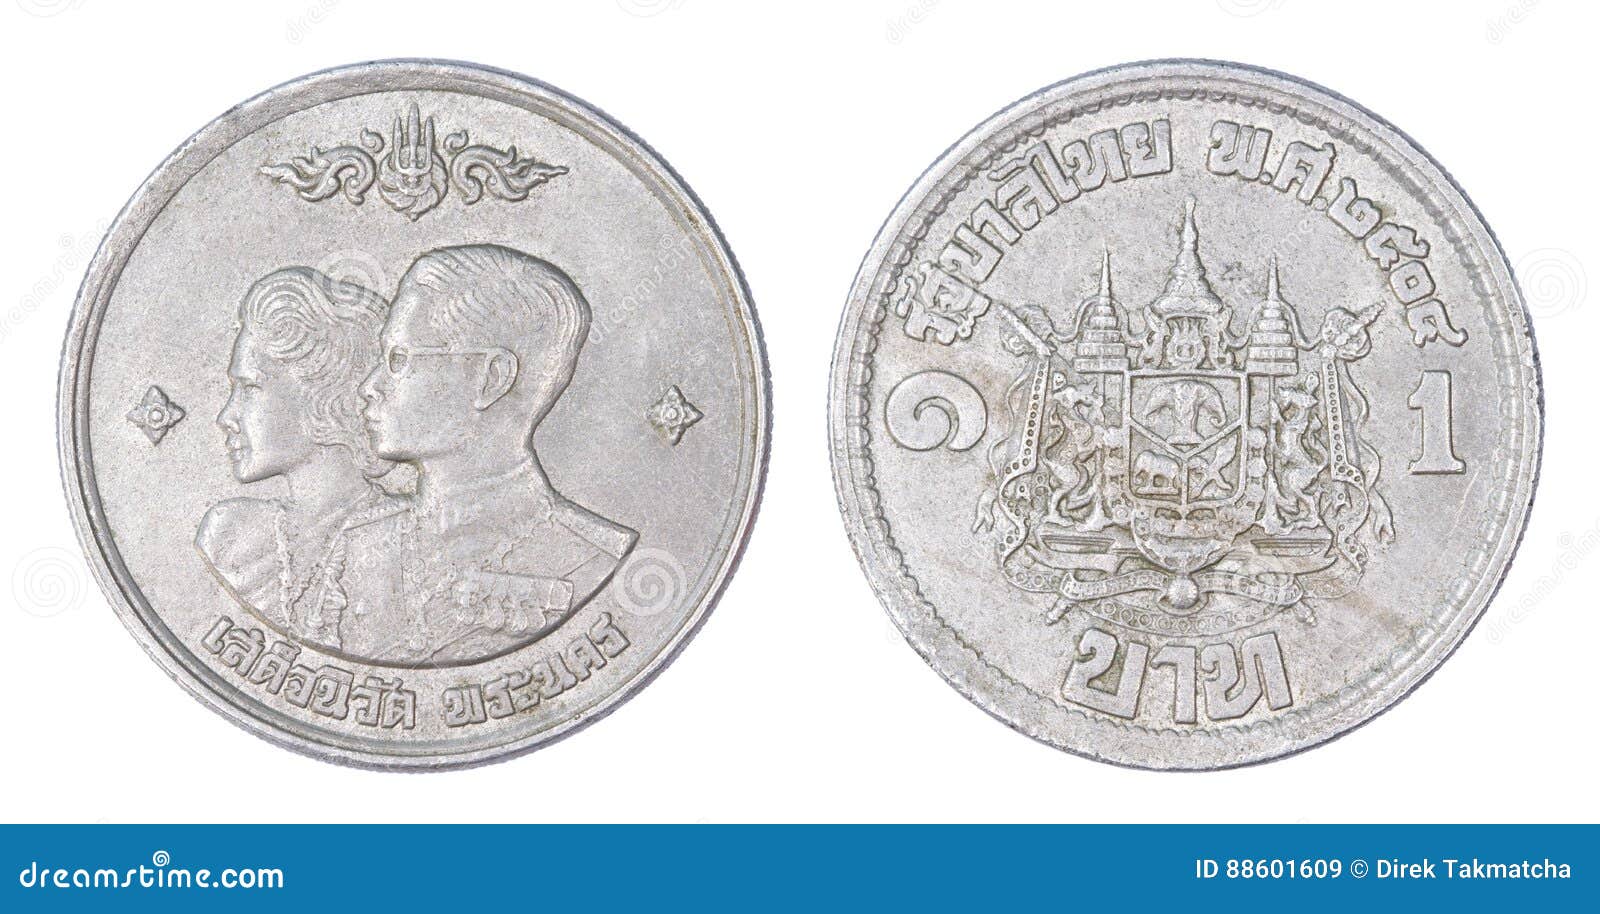 泰国硬币图片及价格表,一泰铢等于多少人民币 - 伤感说说吧